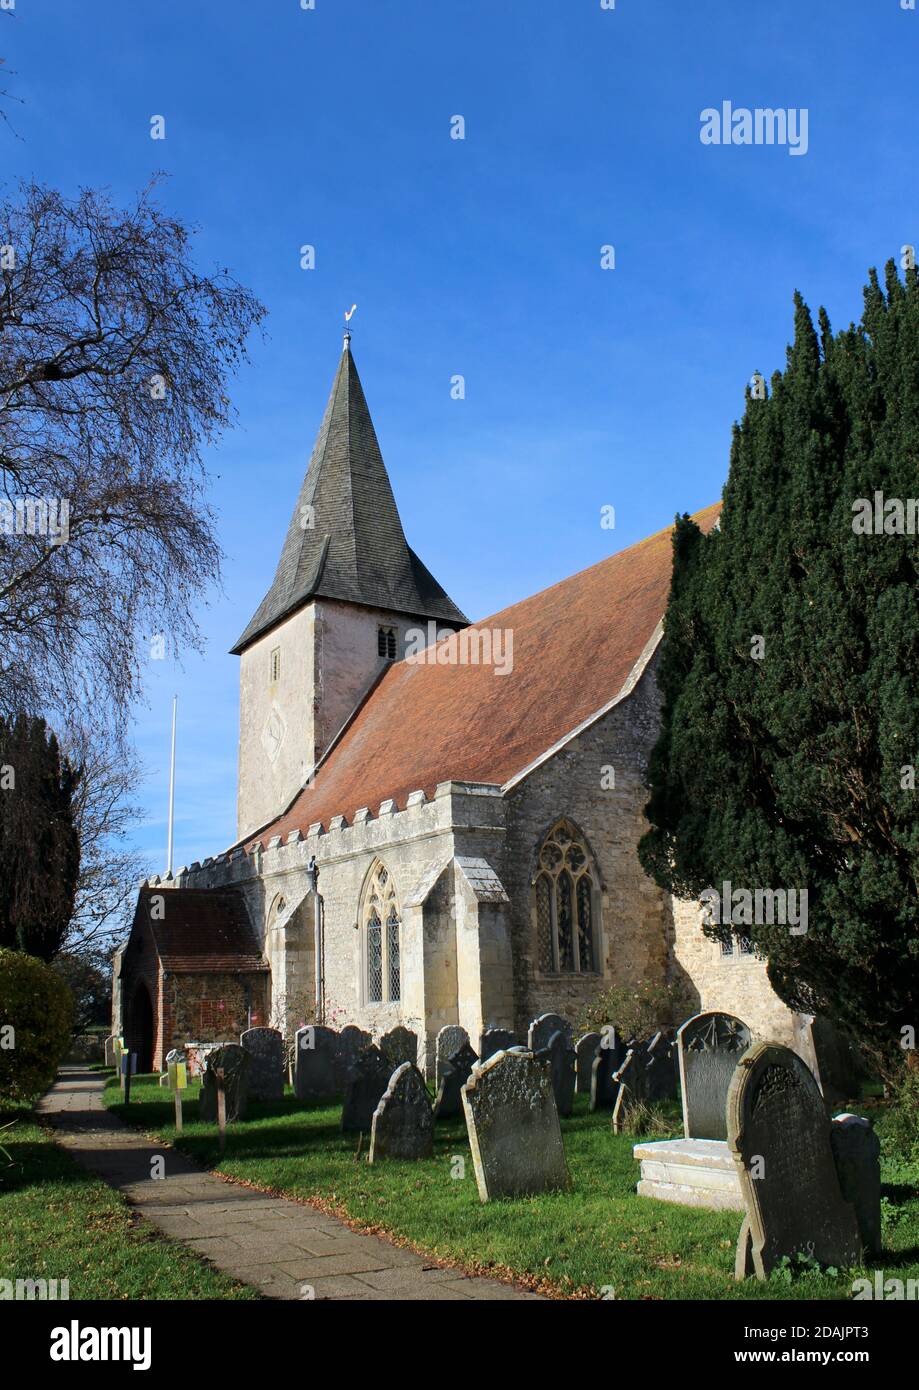 Die Heilige Dreifaltigkeit Chuch, Bosham, Chichester, West Sussex. Ein lokales Wahrzeichen und die Kirche, die auf dem Wandteppich von Bayeux zu sehen ist. Eine beliebte Besucherattraktion. Stockfoto